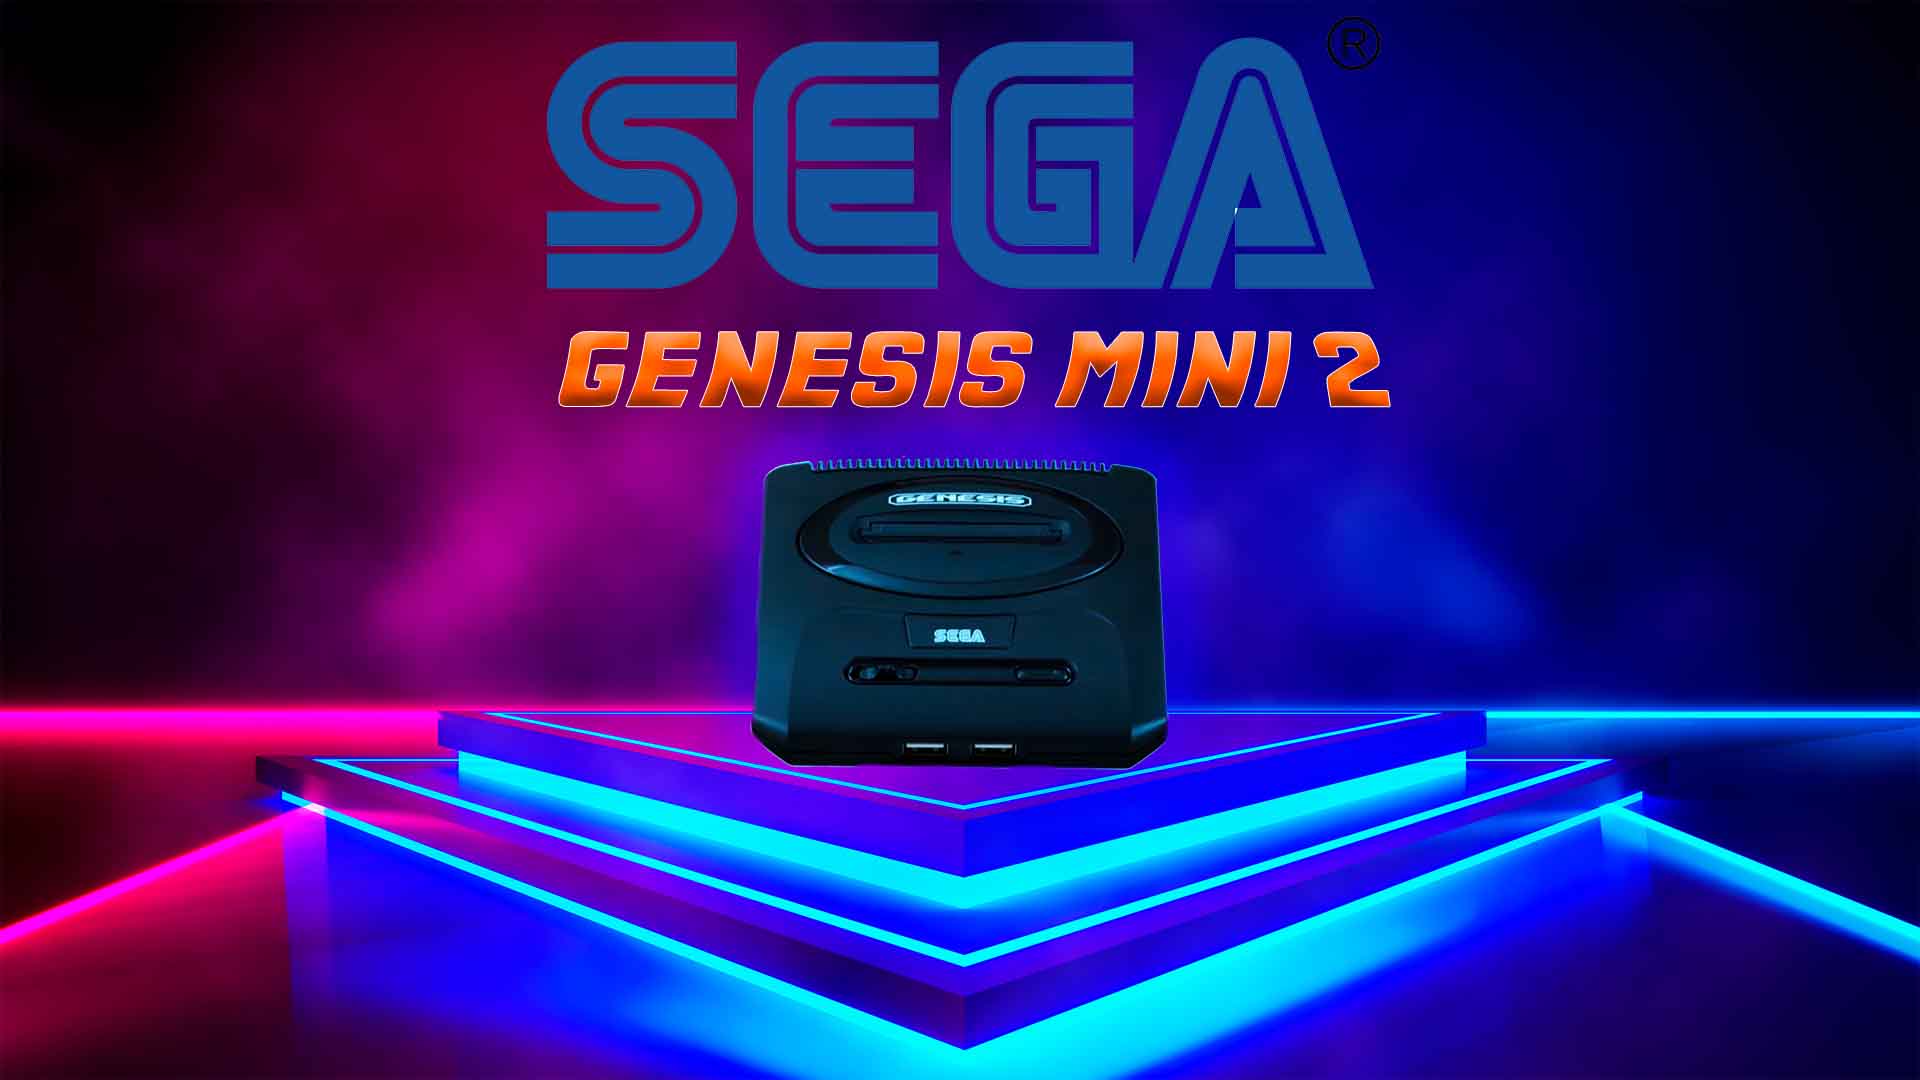 sega Genesis mini 2